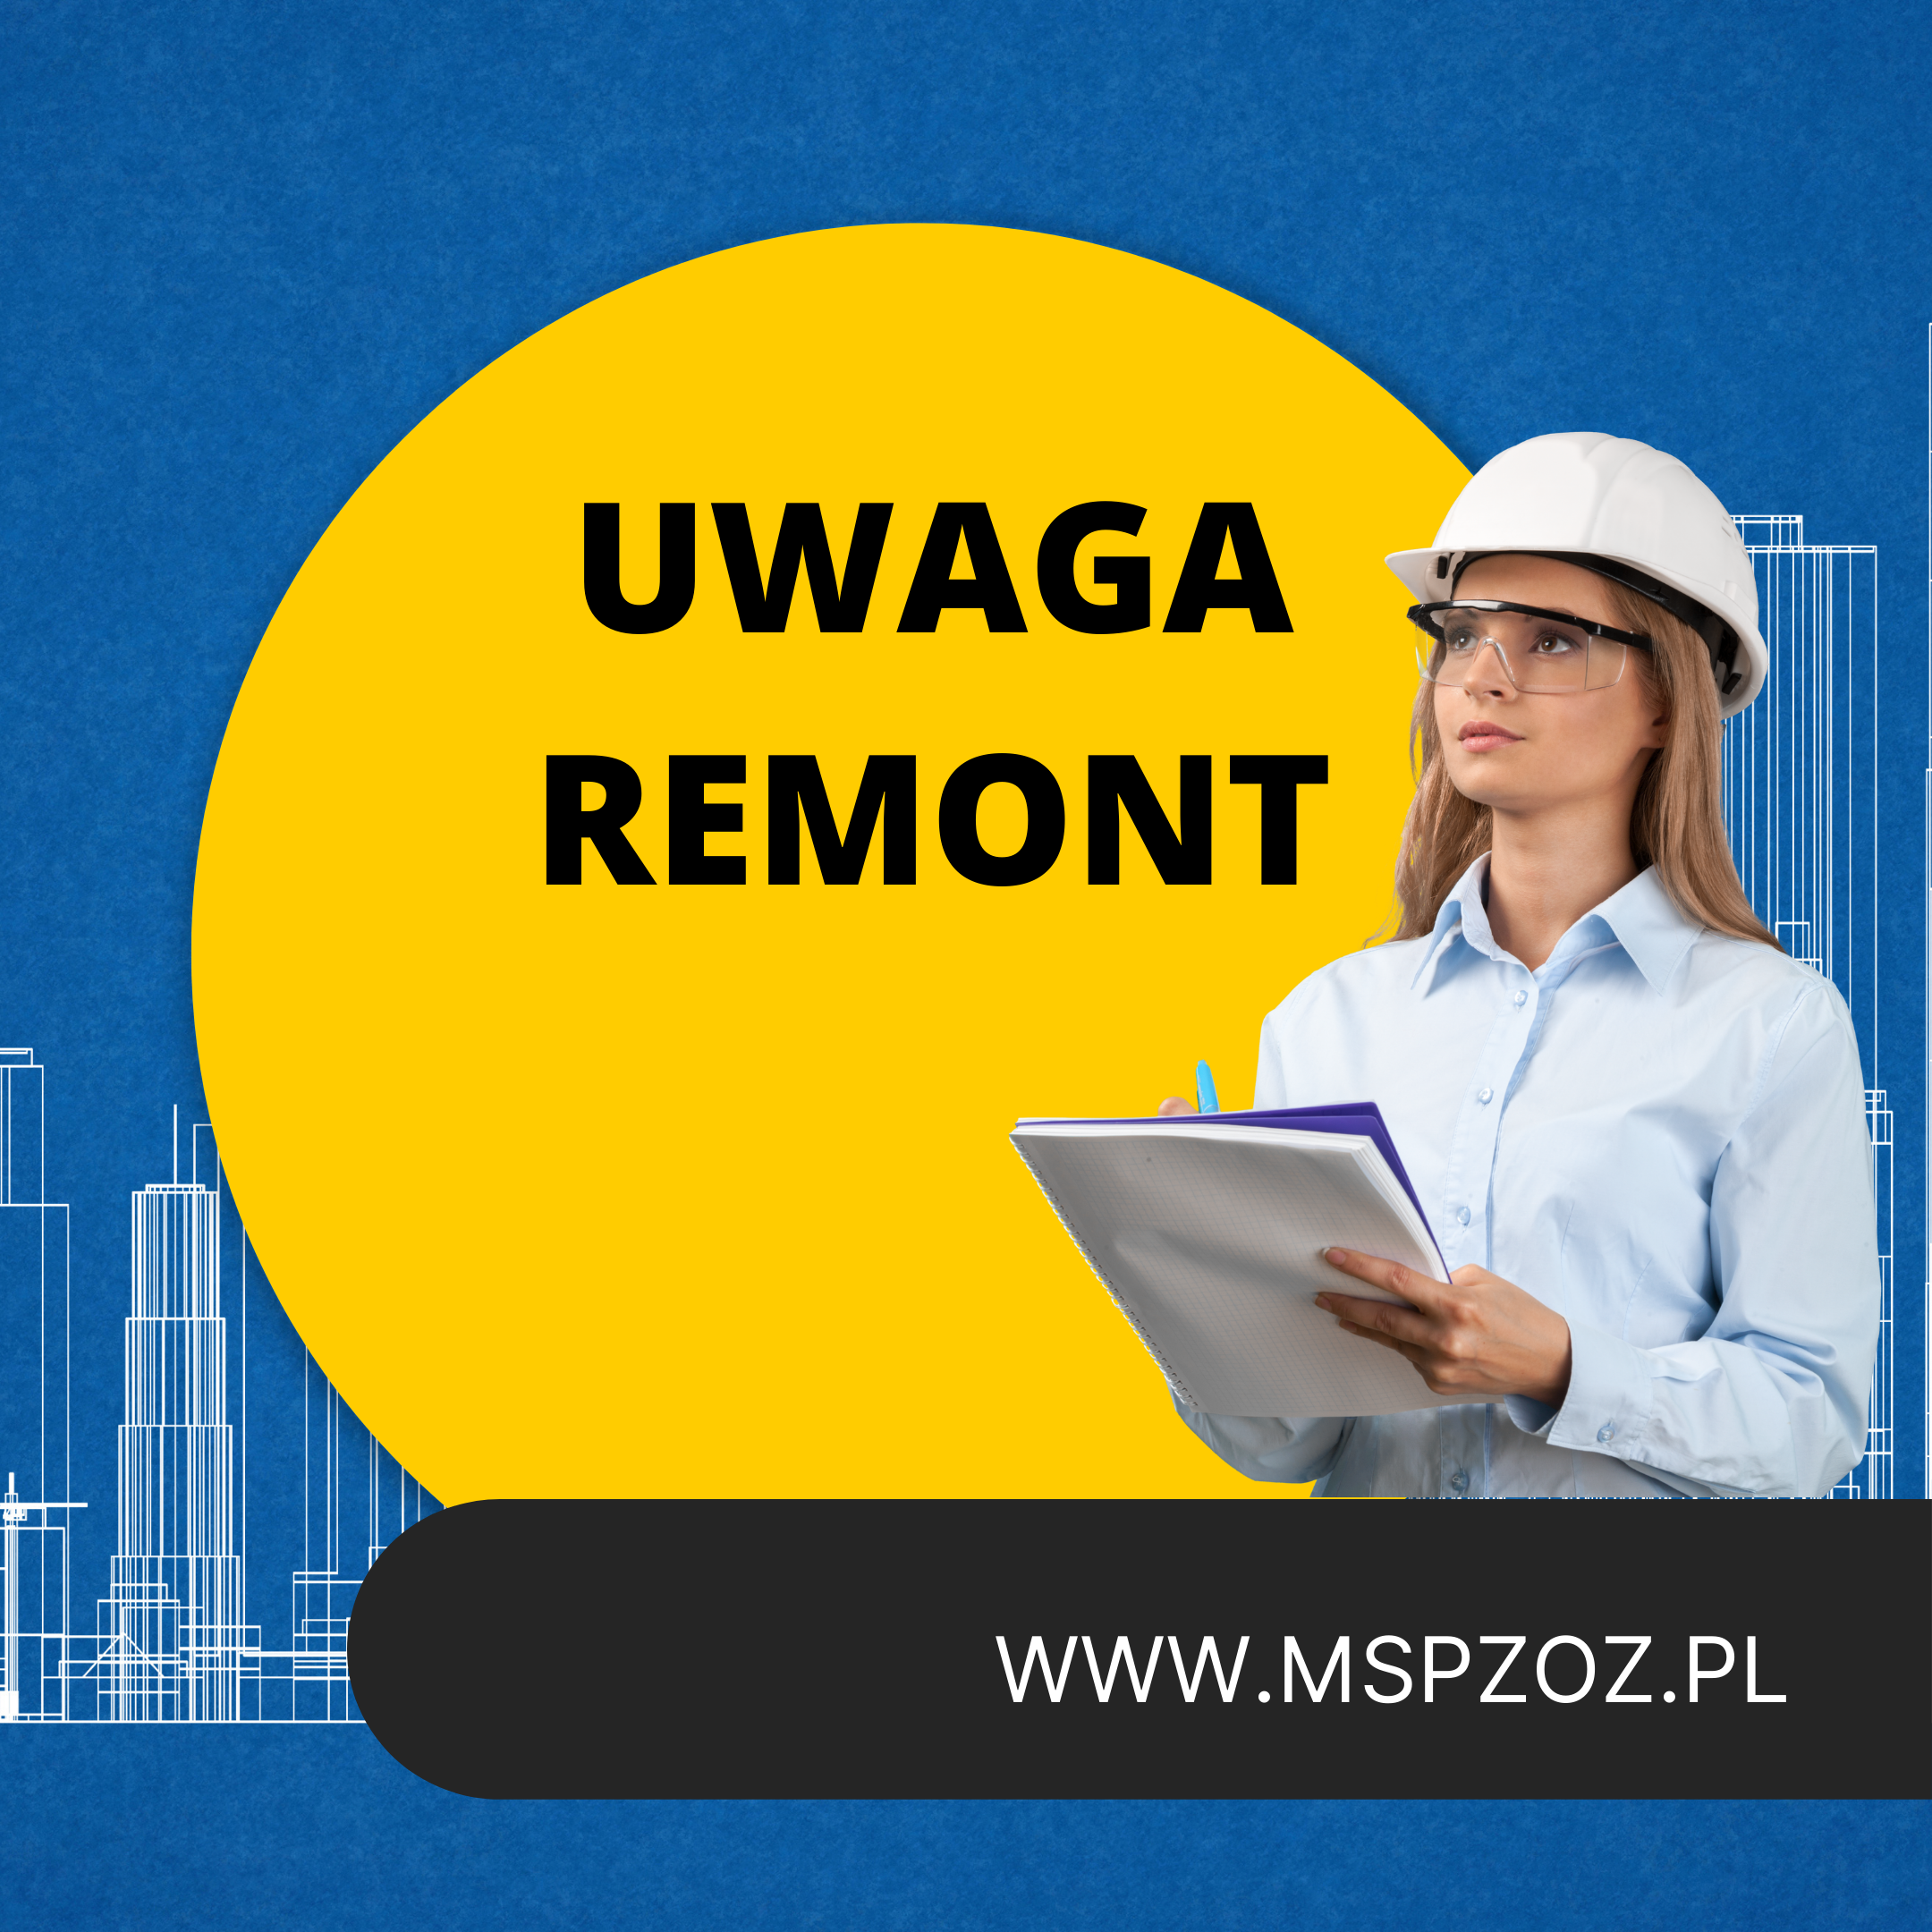 UWAGA REMONT